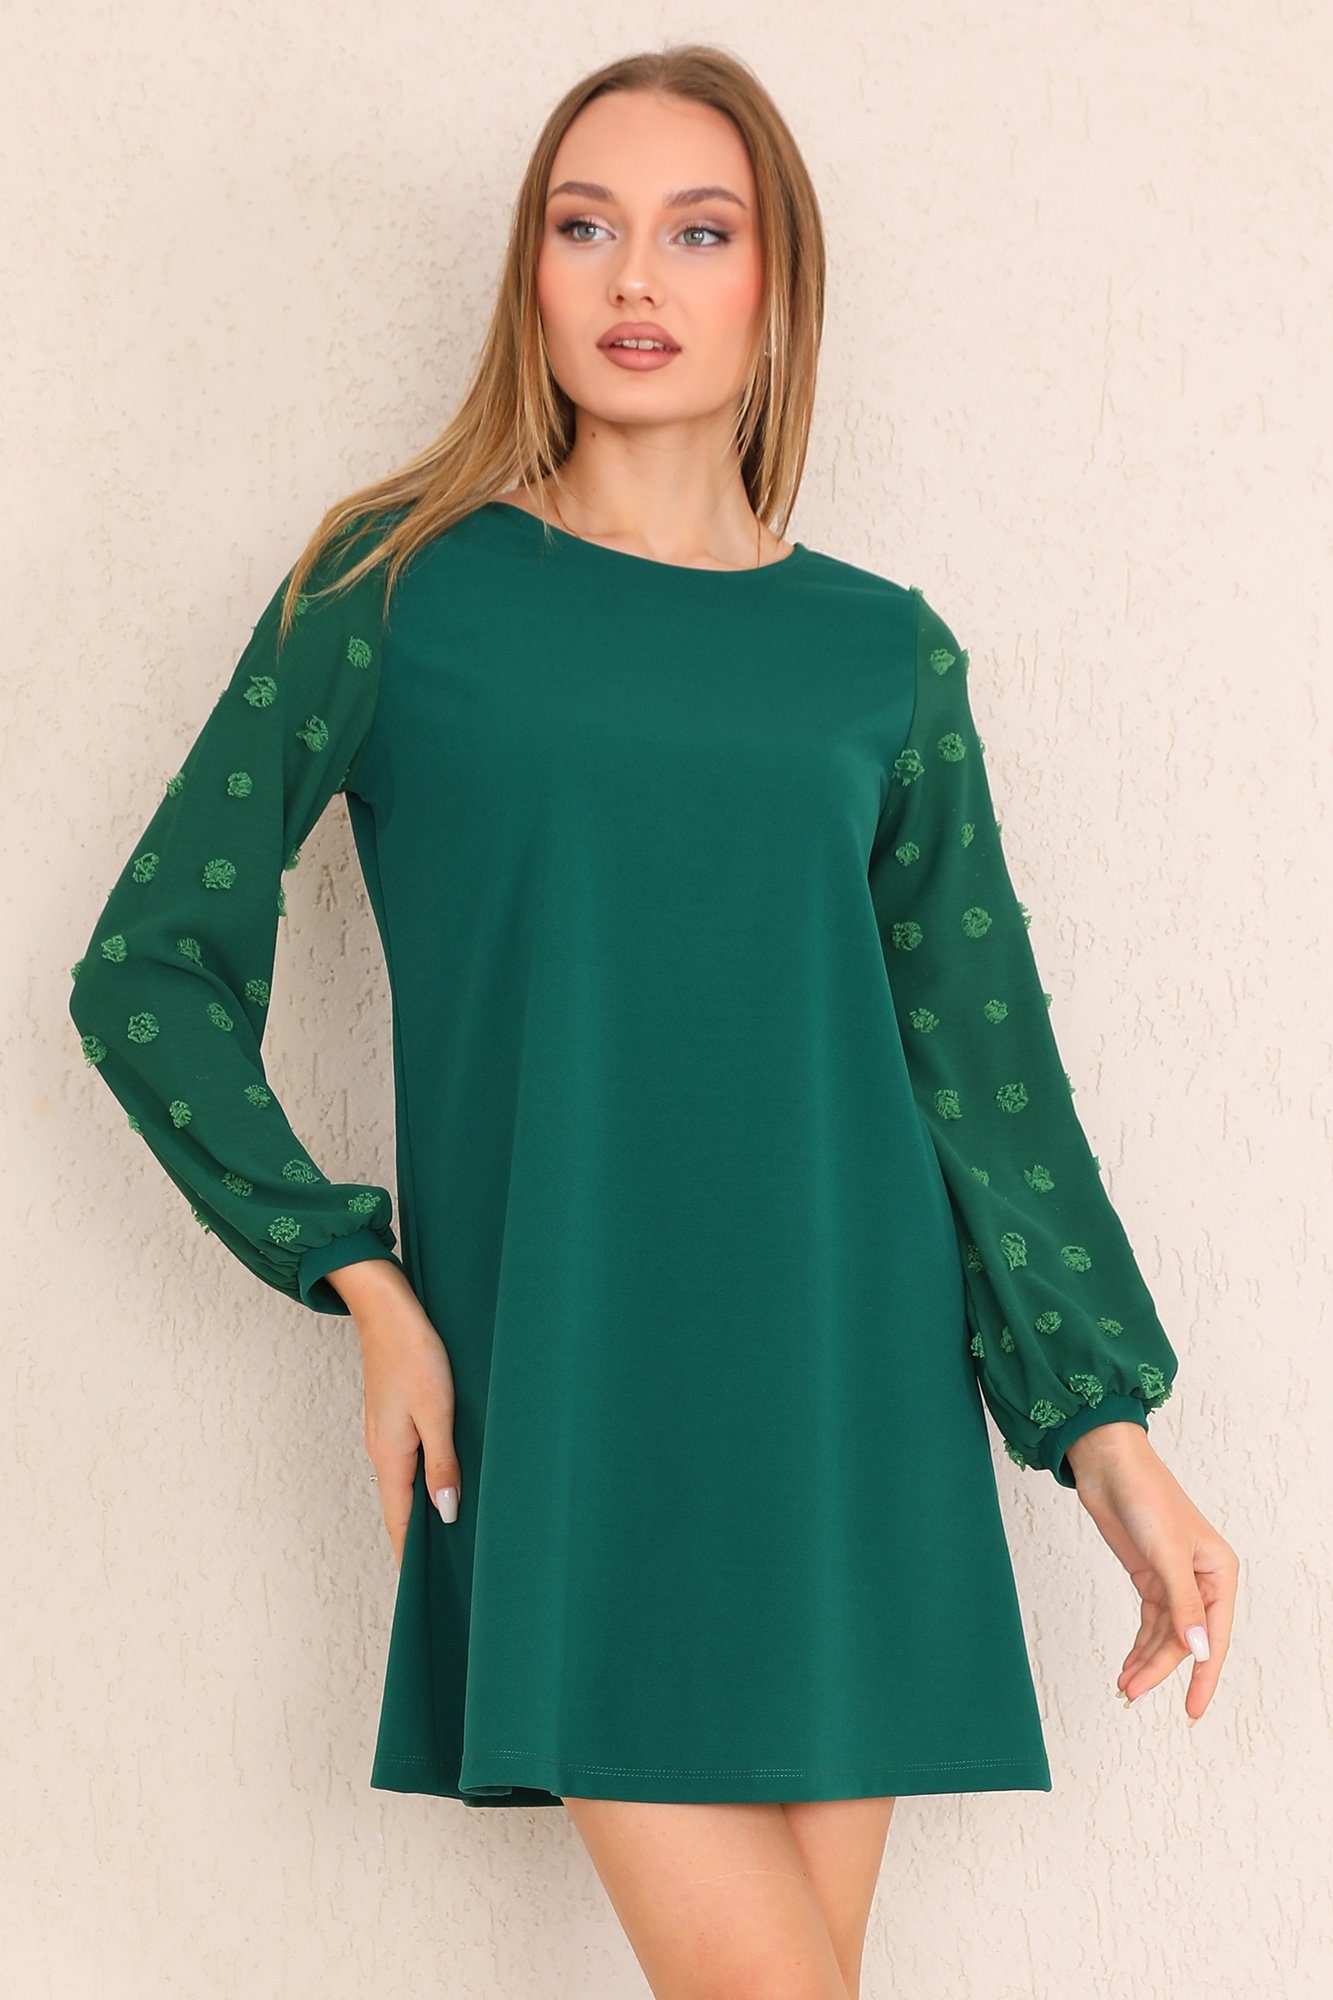 Bongual Partykleid A-Linie-Kleid Laterneärmel mit Struktur Punkte grün | Partykleider